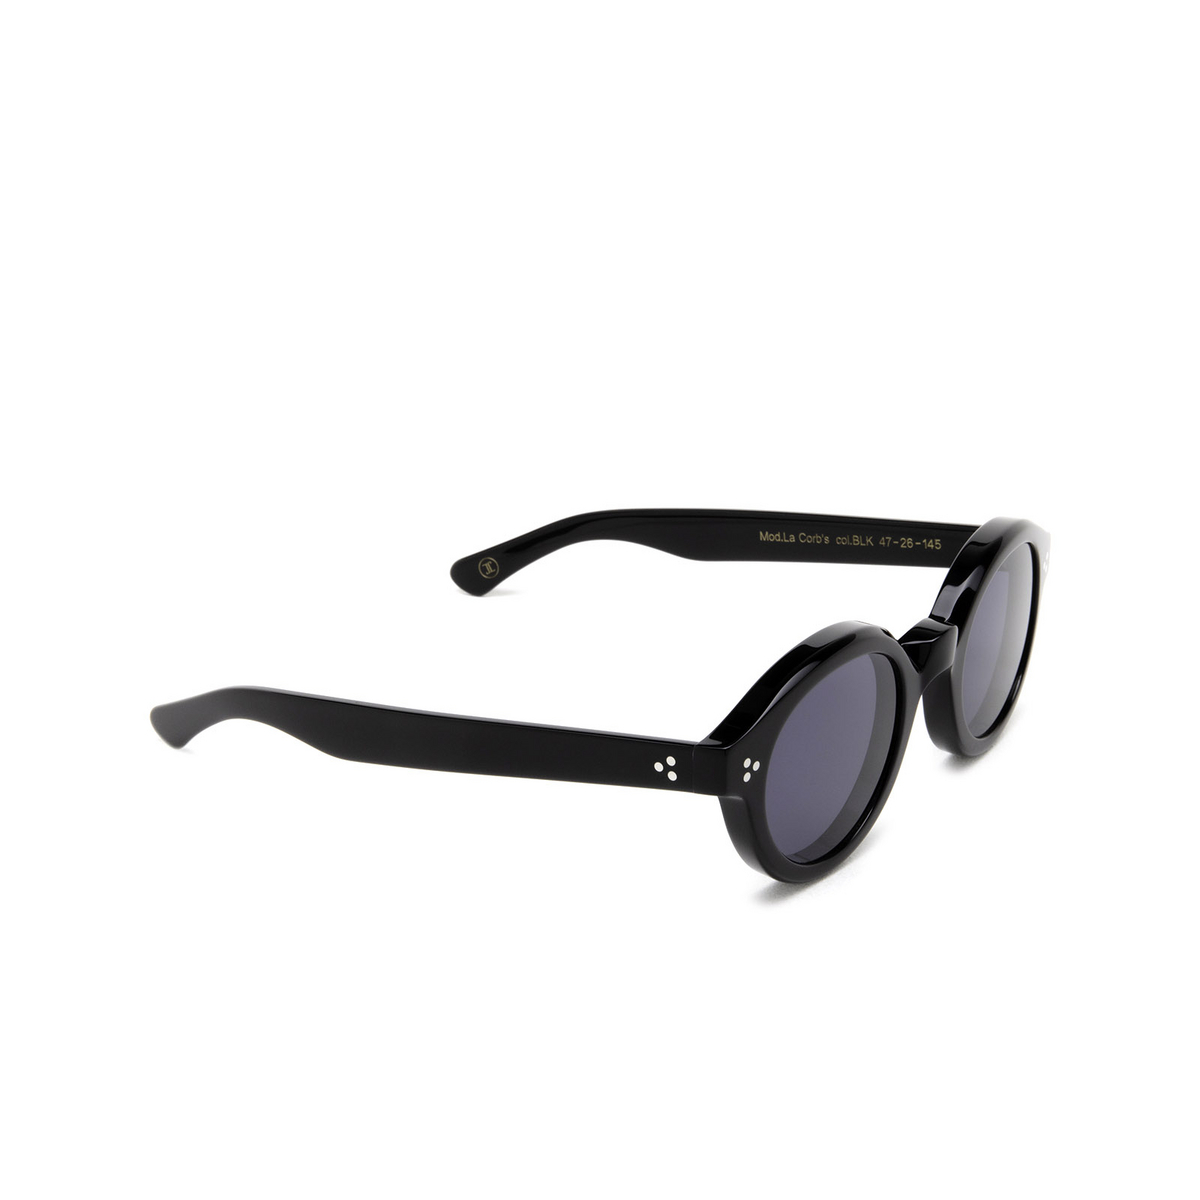 Lesca® Round Sunglasses: La Corbs color Black Blk - three-quarters view.